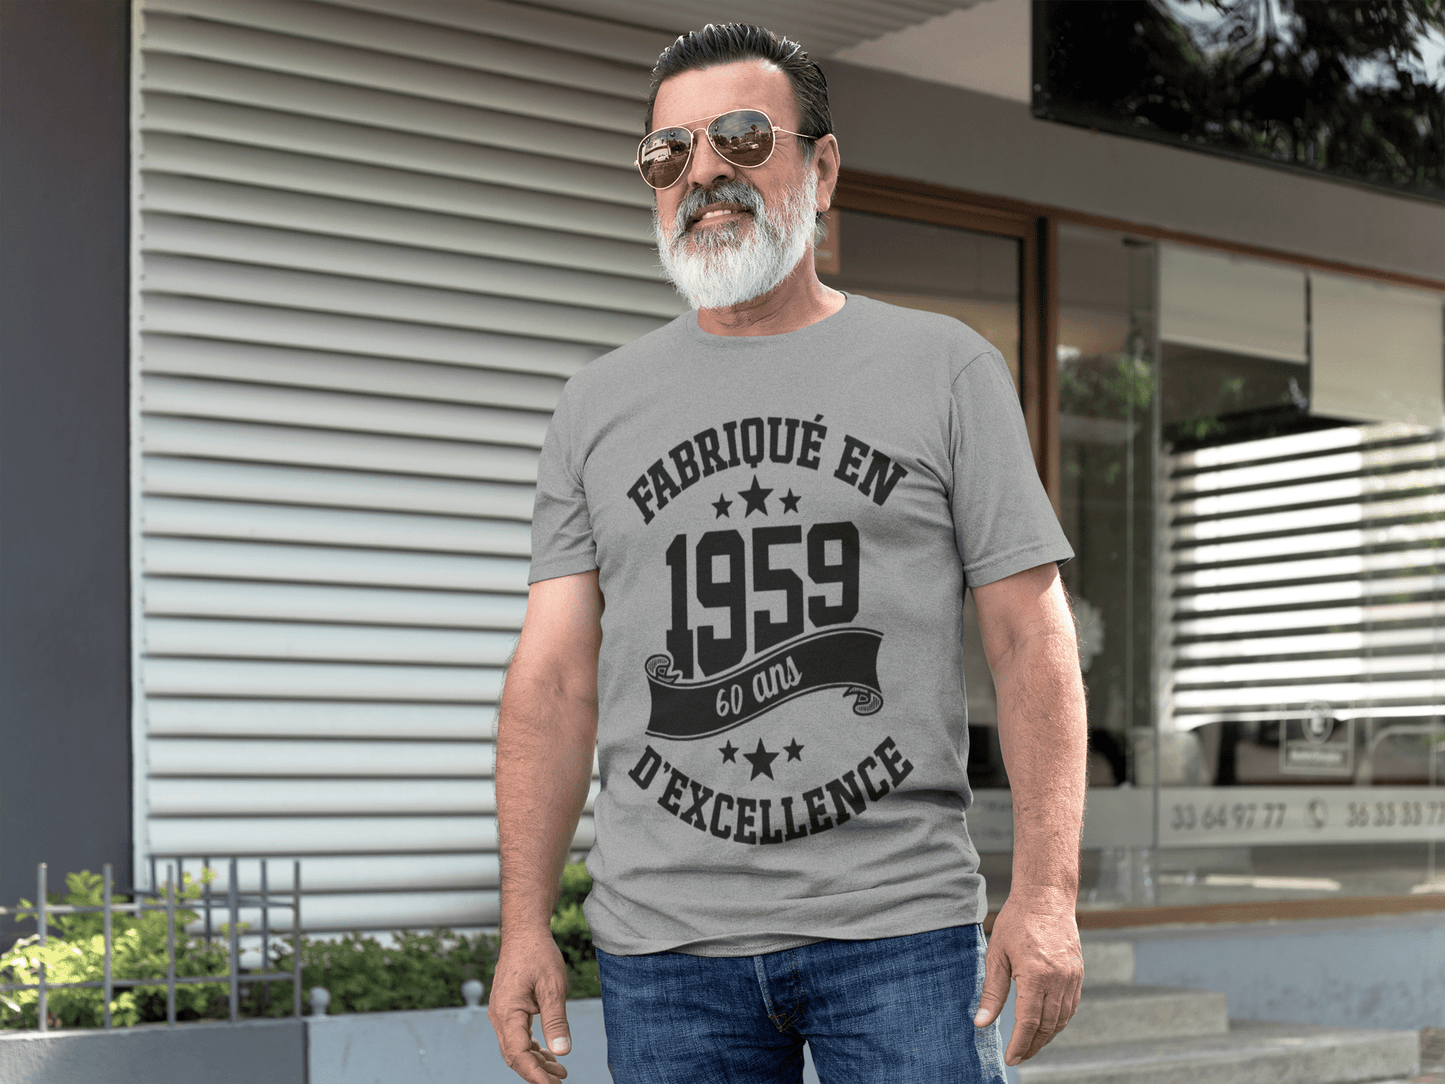 ULTRABASIC - Fabriqué en 1959, 60 Ans d'être Génial Unisex T-Shirt Gris Chiné